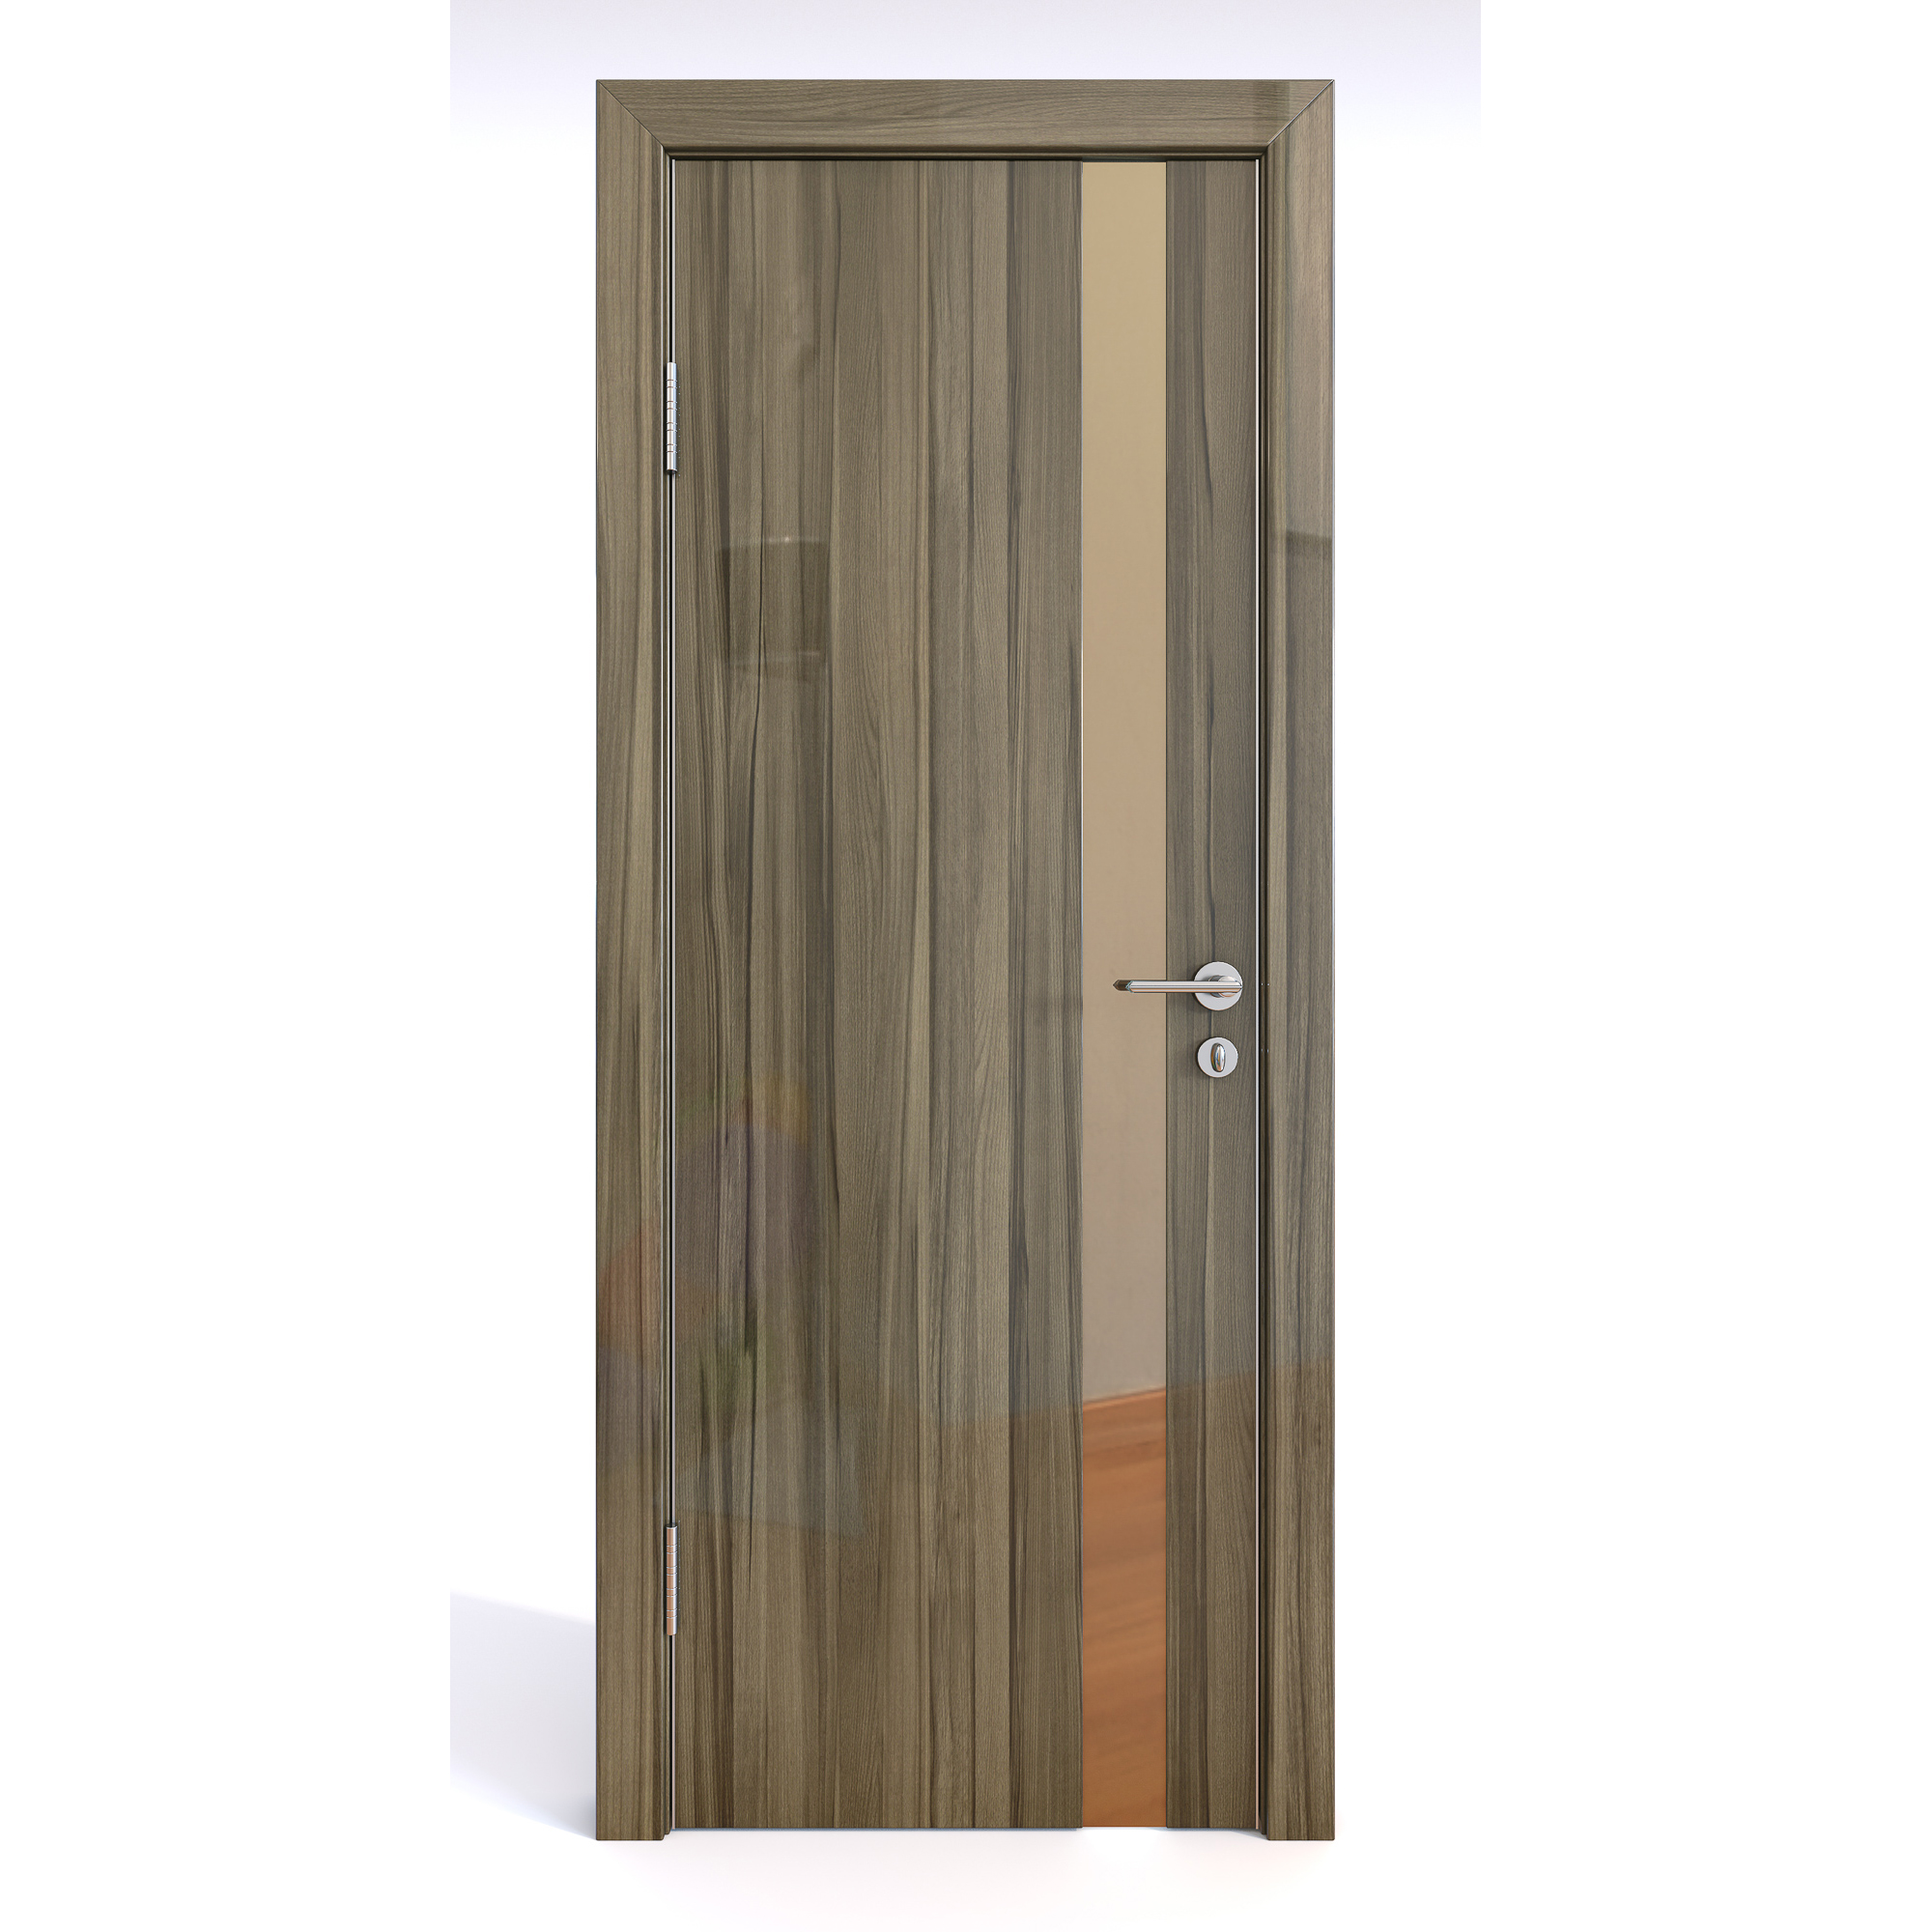 фото Межкомнатная шумоизоляционная дверь до-607/2 сосна глянец/бронза 200х60 дверная линия